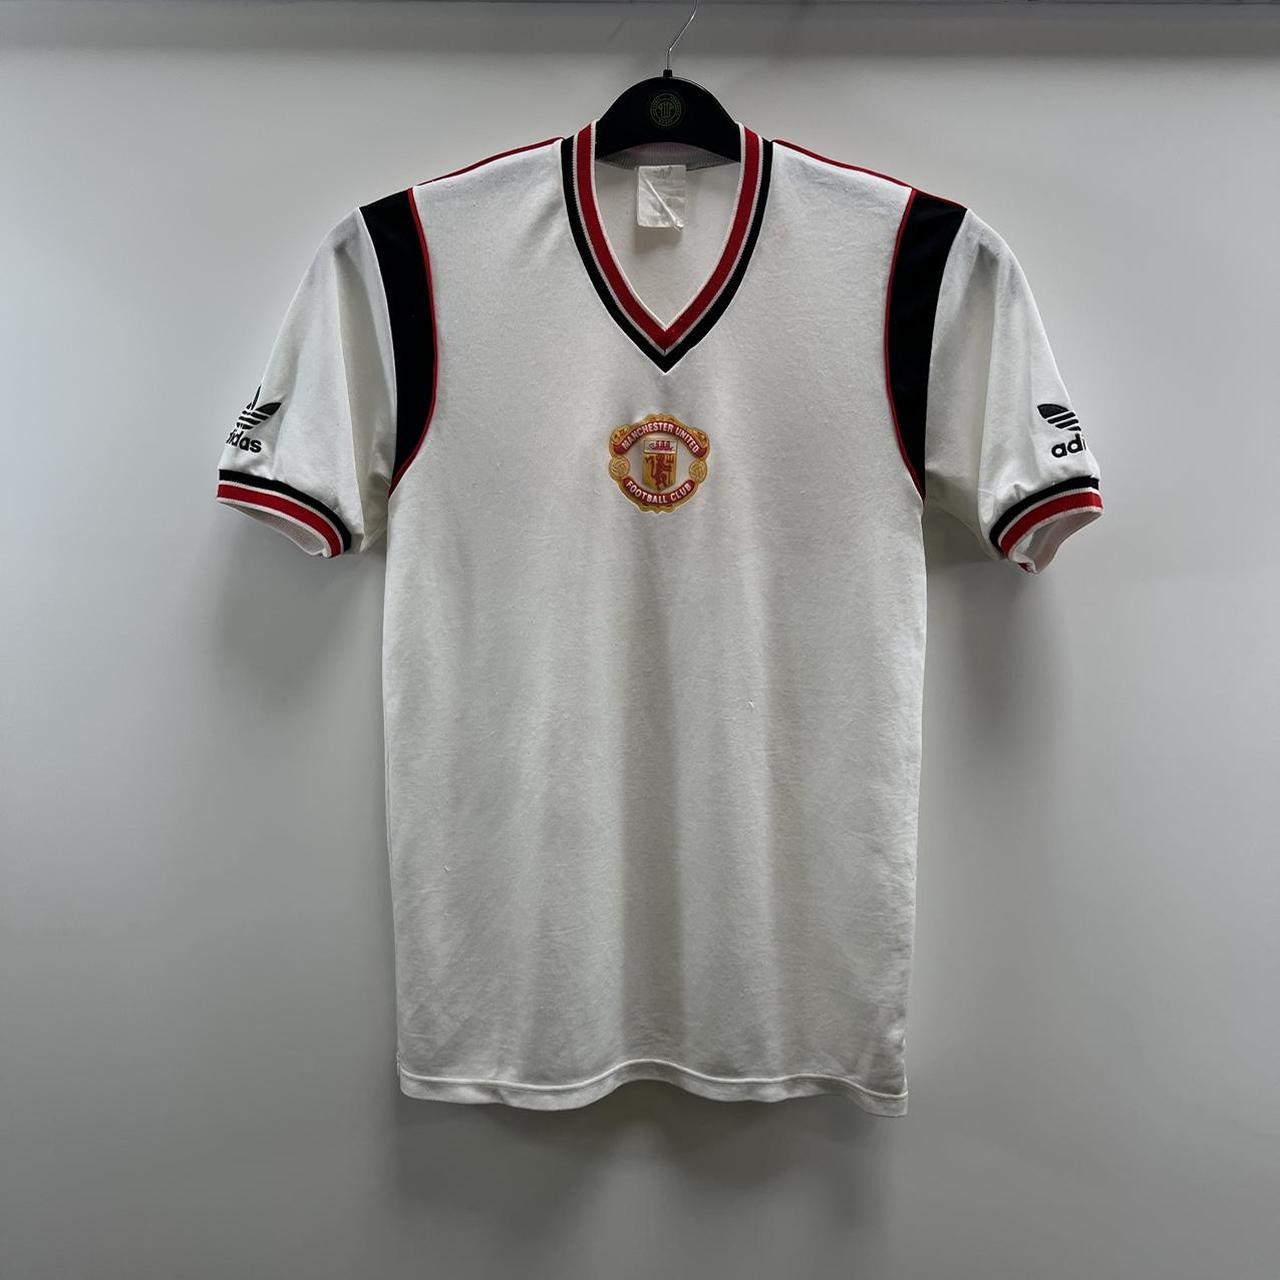 1984/85 Man Utd 3rd Football Shirt / Official Adidas Soccer Jersey